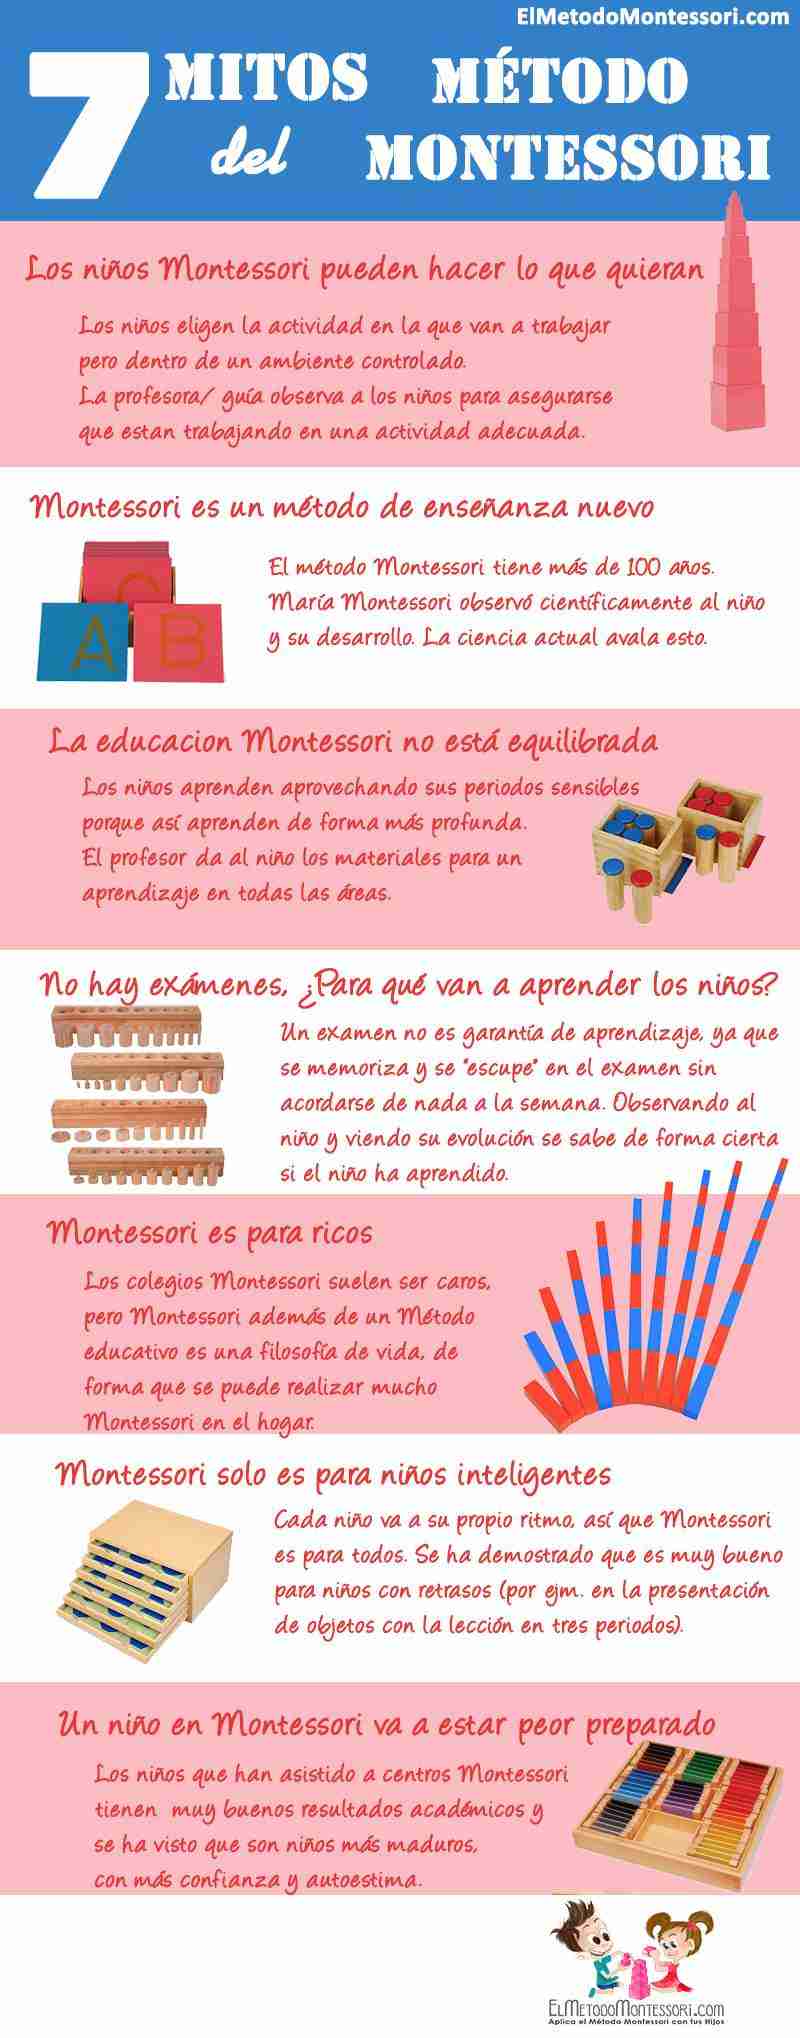 7 mitos del Método Montessori